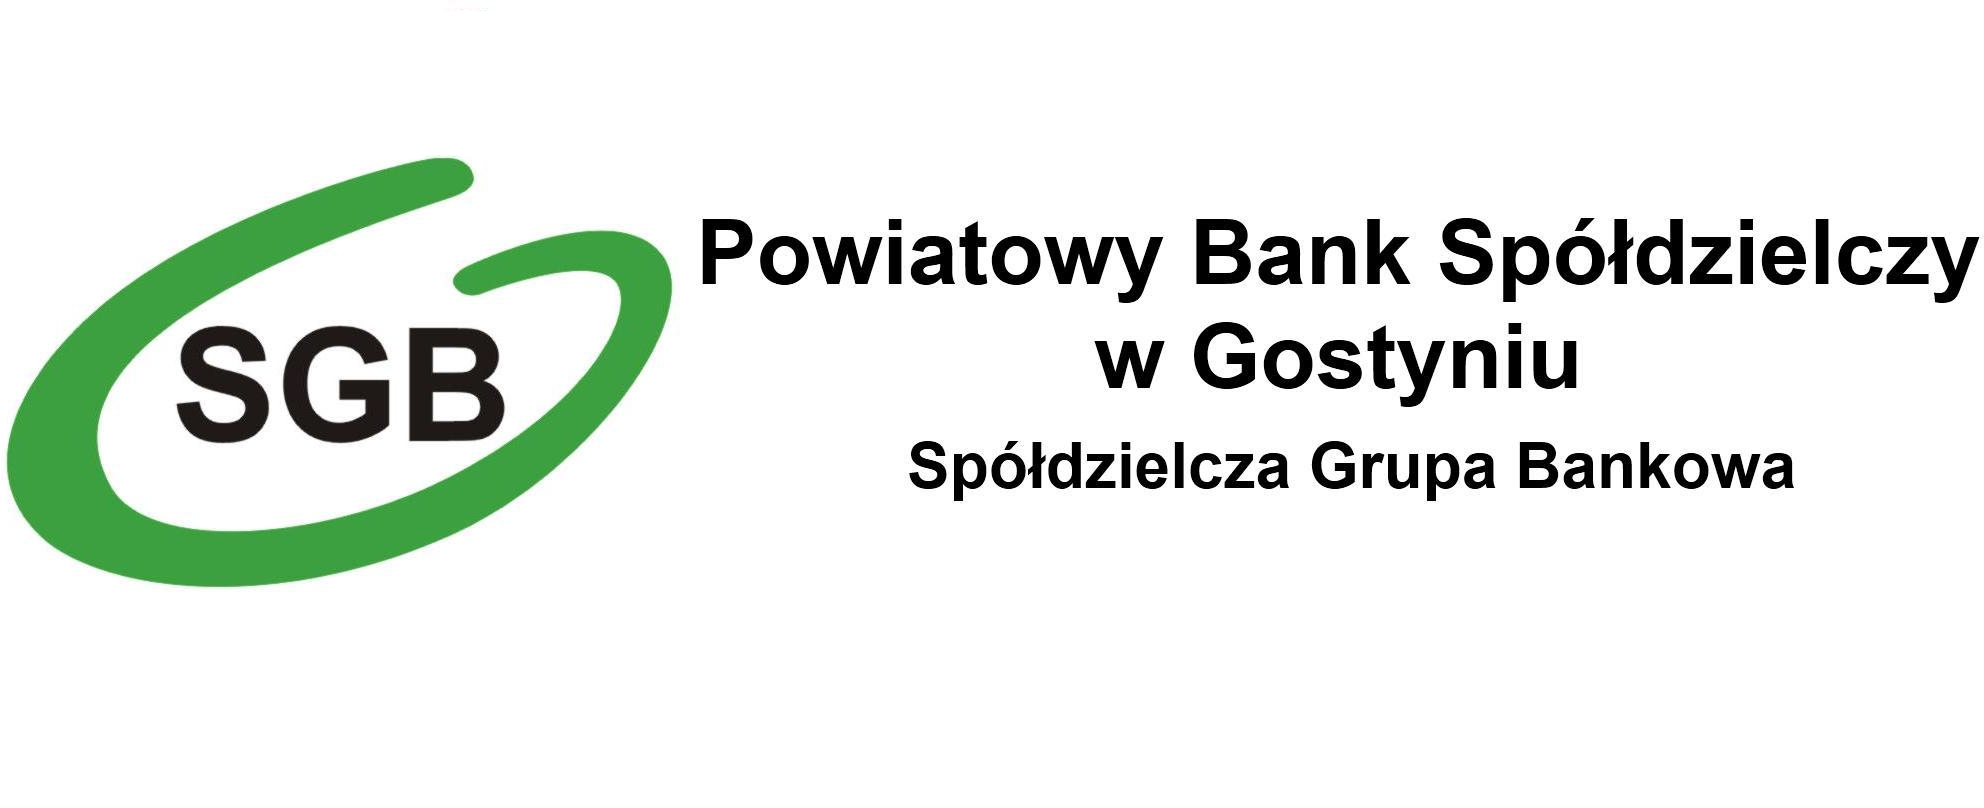 Wykaz umów outsourcingowych - Powiatowy Bank Spółdzielczy w Gostyniu